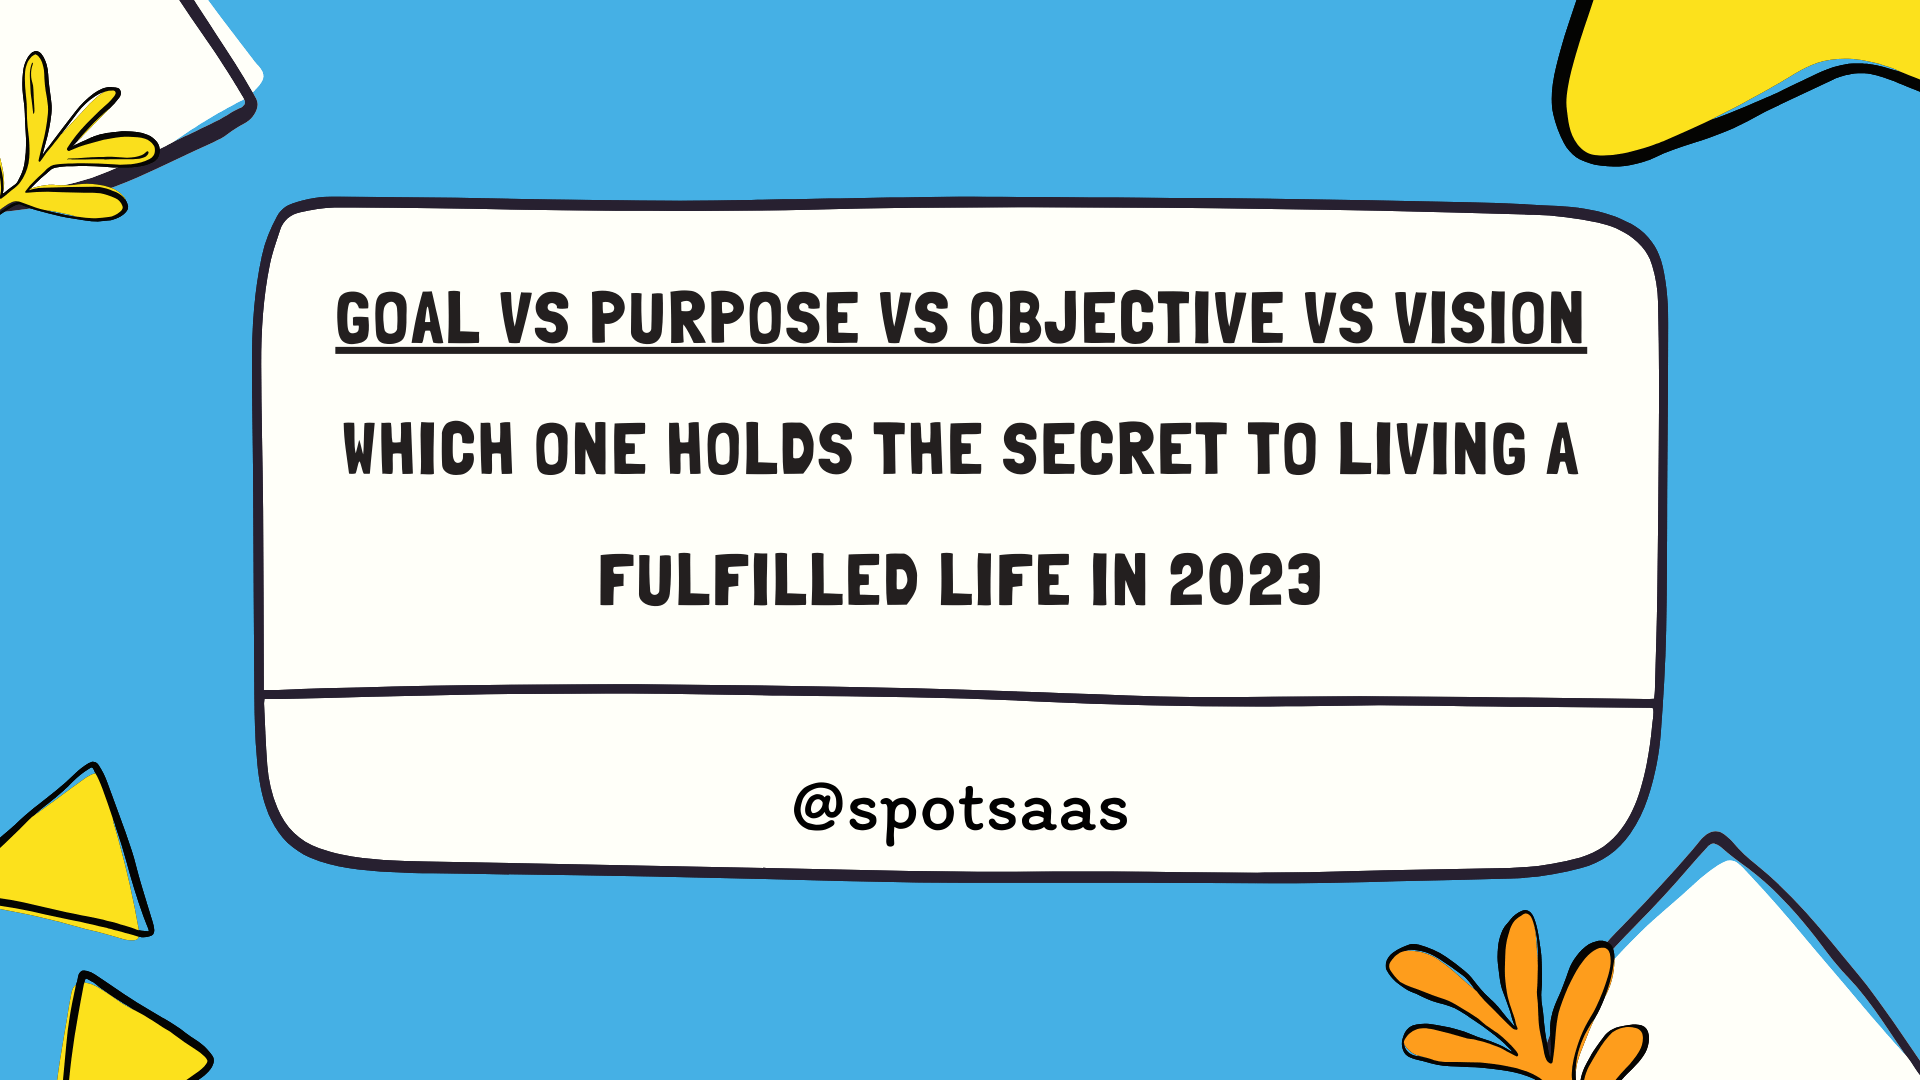 Goal vs purpose vs objective vs vision